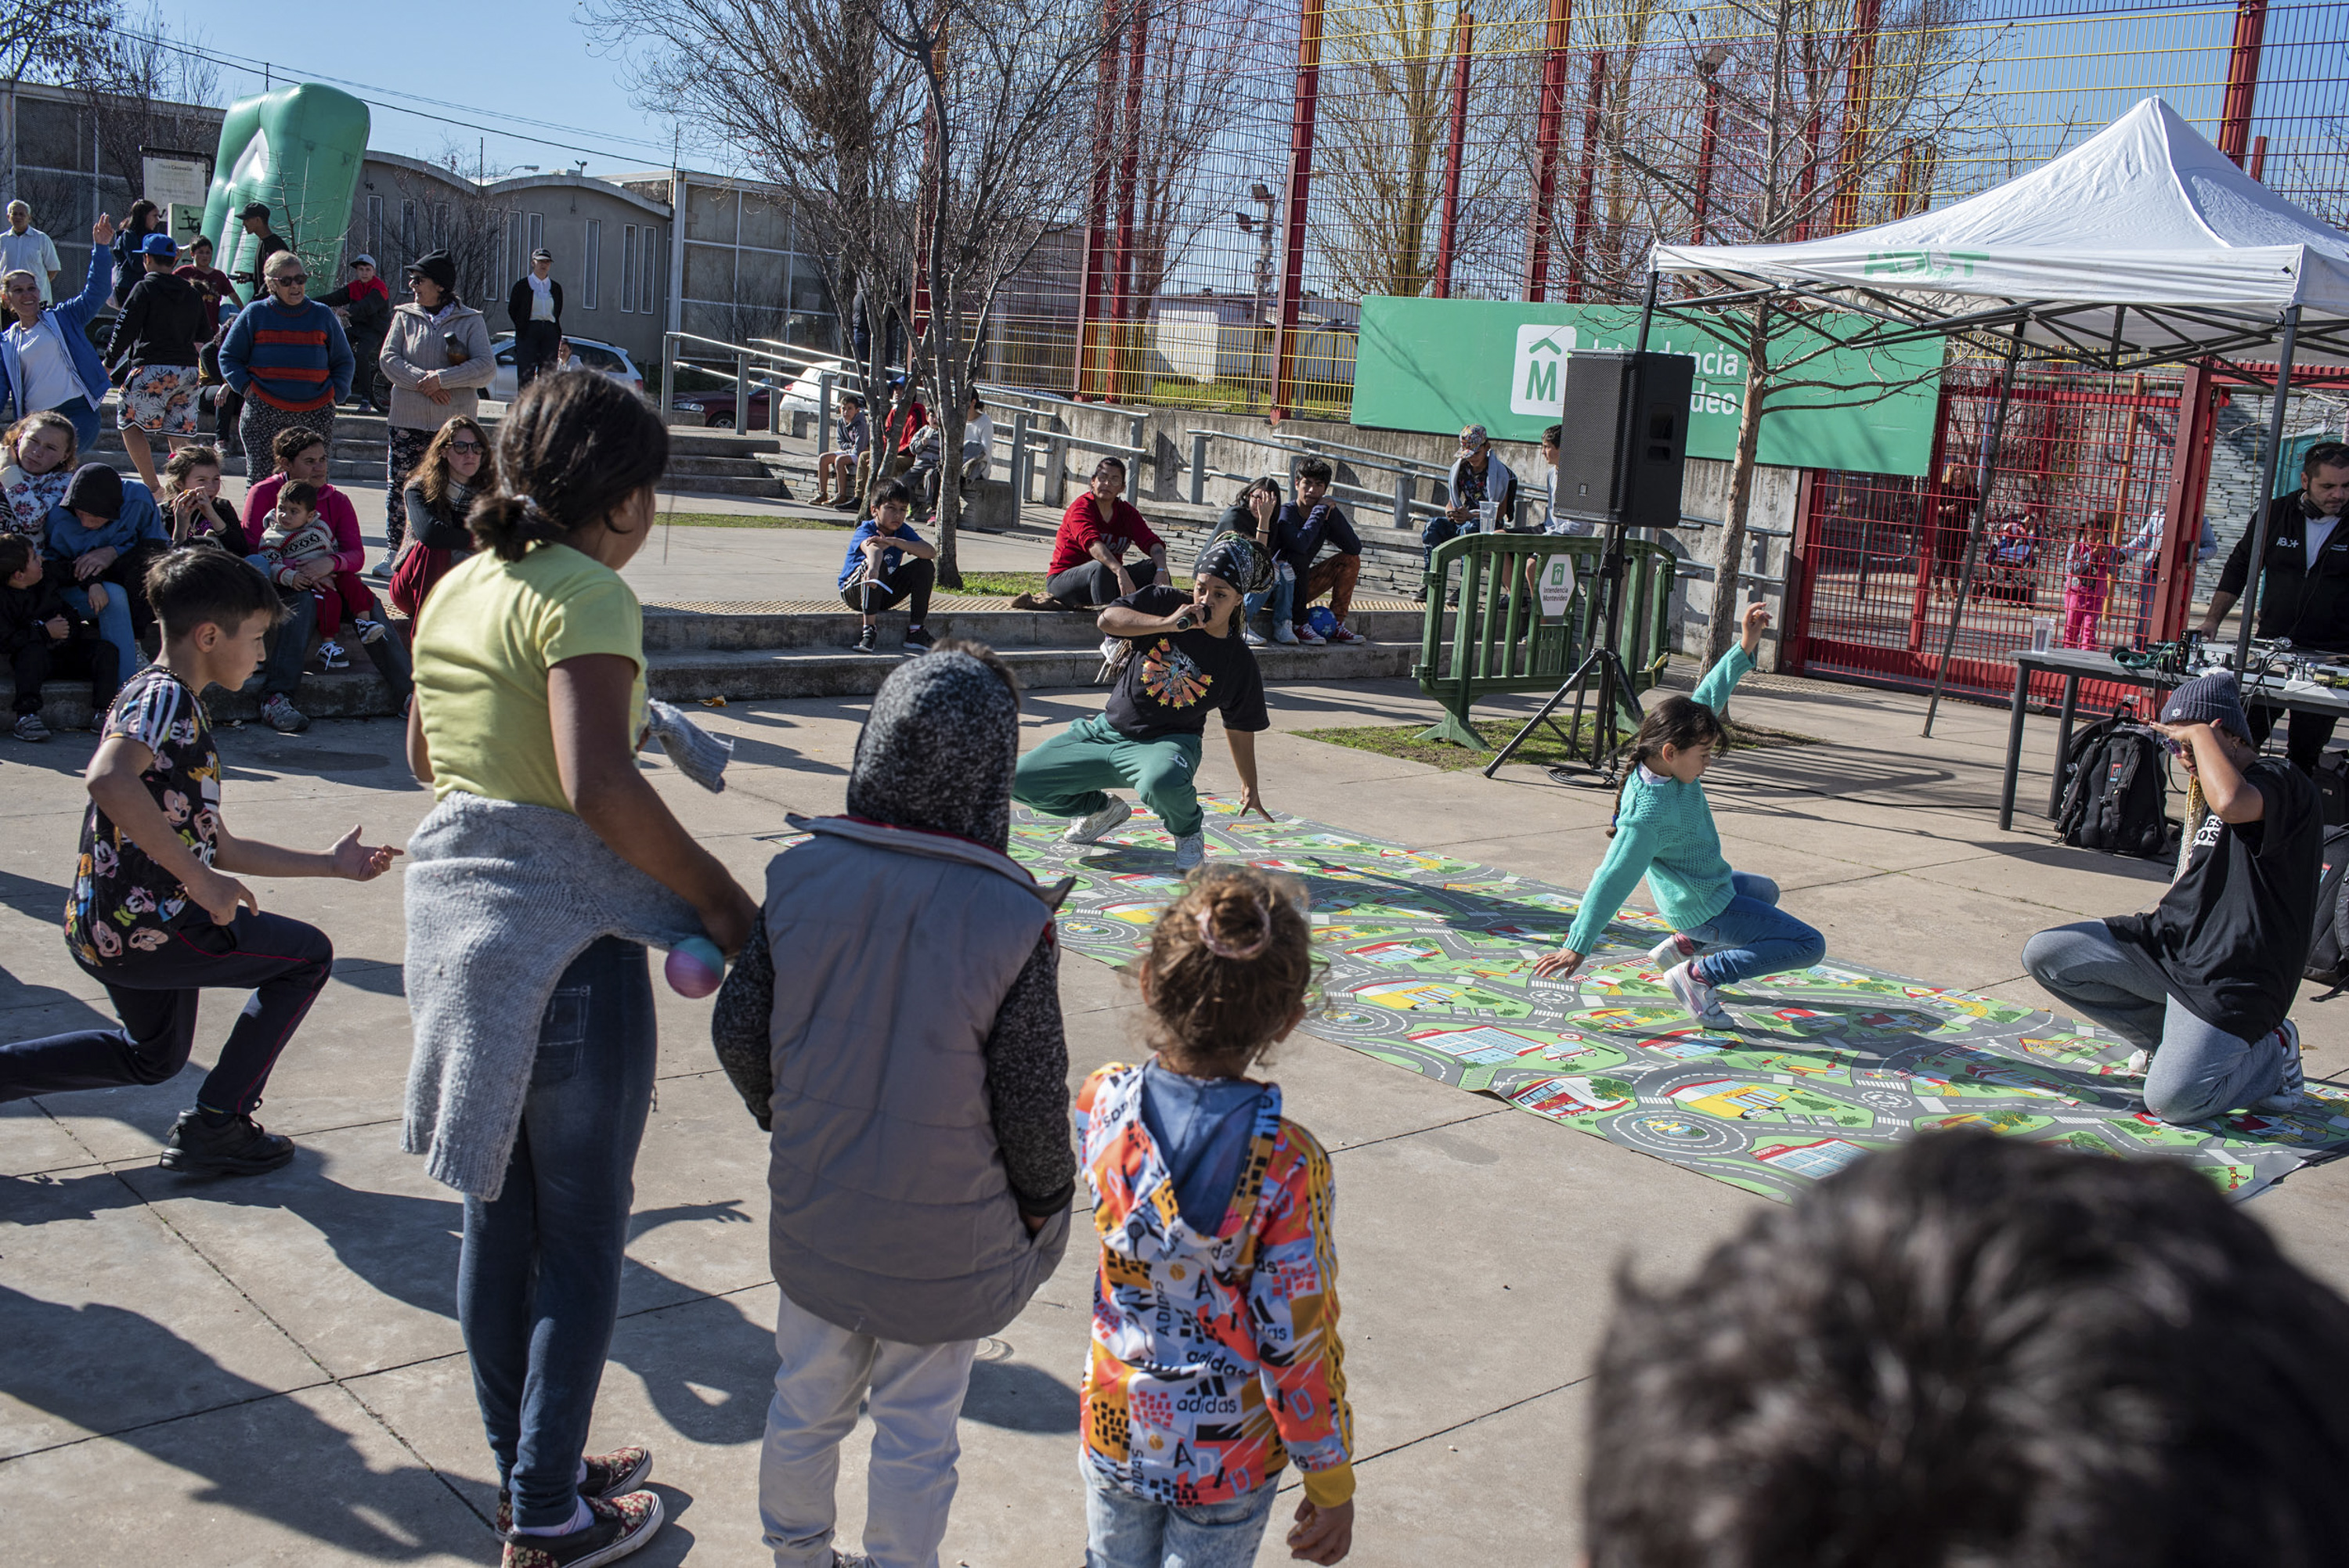 Actividades en la plaza Casavalle en el marco del Plan ABC + Deporte y Cultura